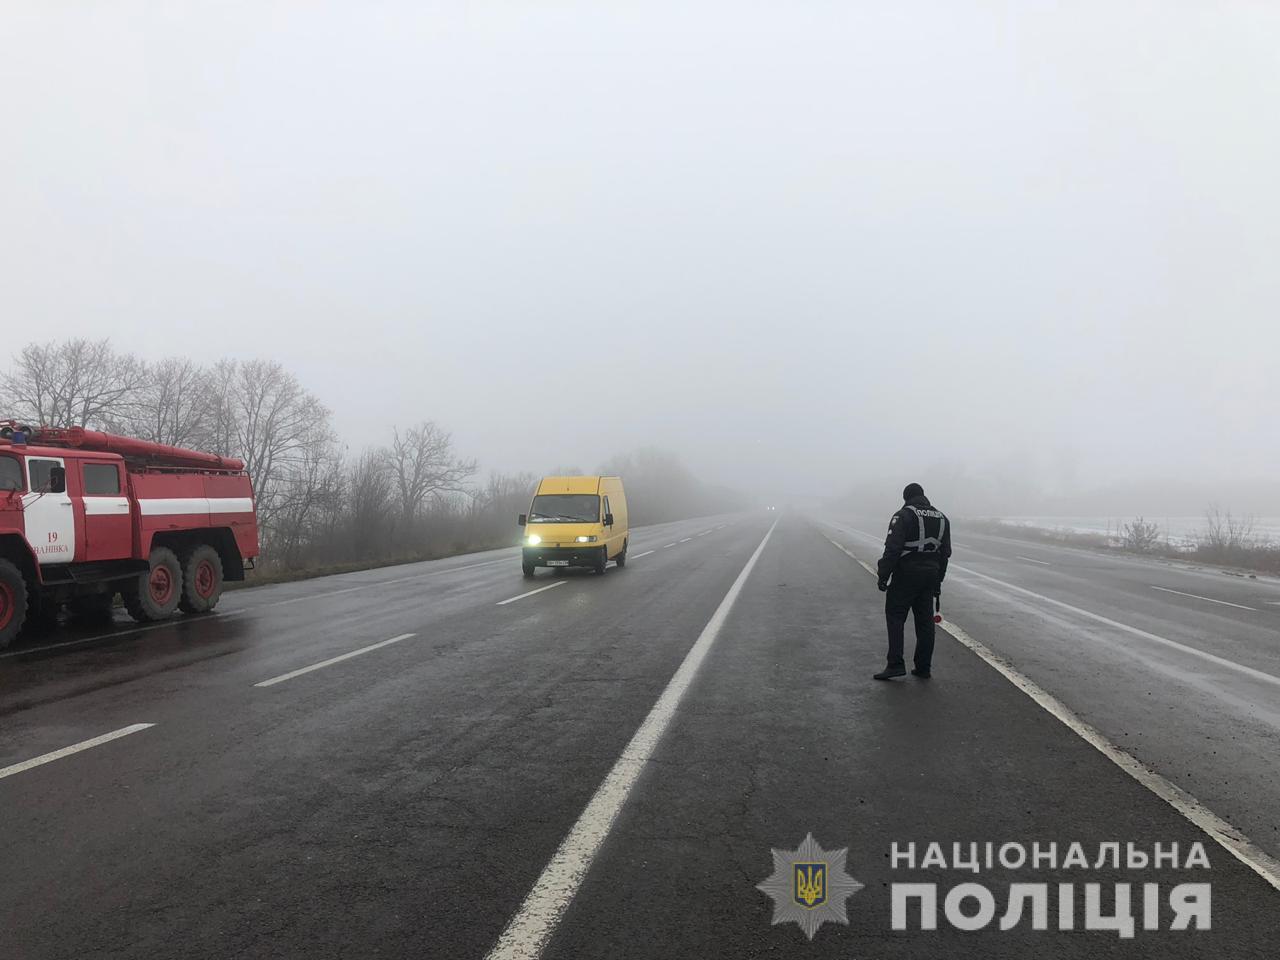 Туман и гололед на дорогах: на трассе "Одесса-Киев" в ДТП попали десять автомобилей и пассажирский автобус. Есть пострадавшие